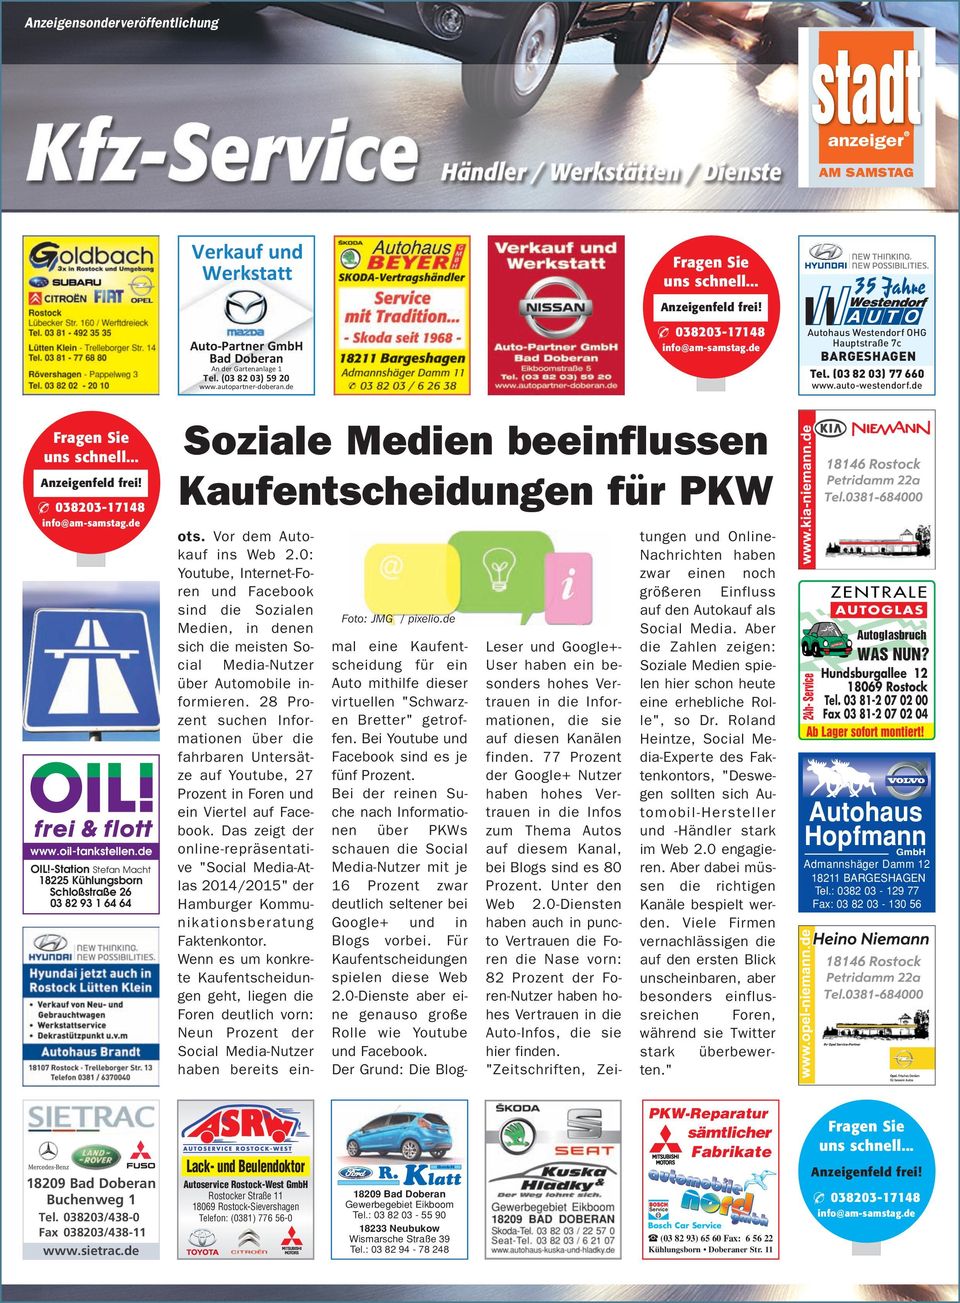 .. Autohaus Westendorf OHG Hauptstraße 7c Soziale Medien beeinflussen Kaufentscheidungen für PKW info@am-samstag.de www.oil-tankstellen.de OIL!